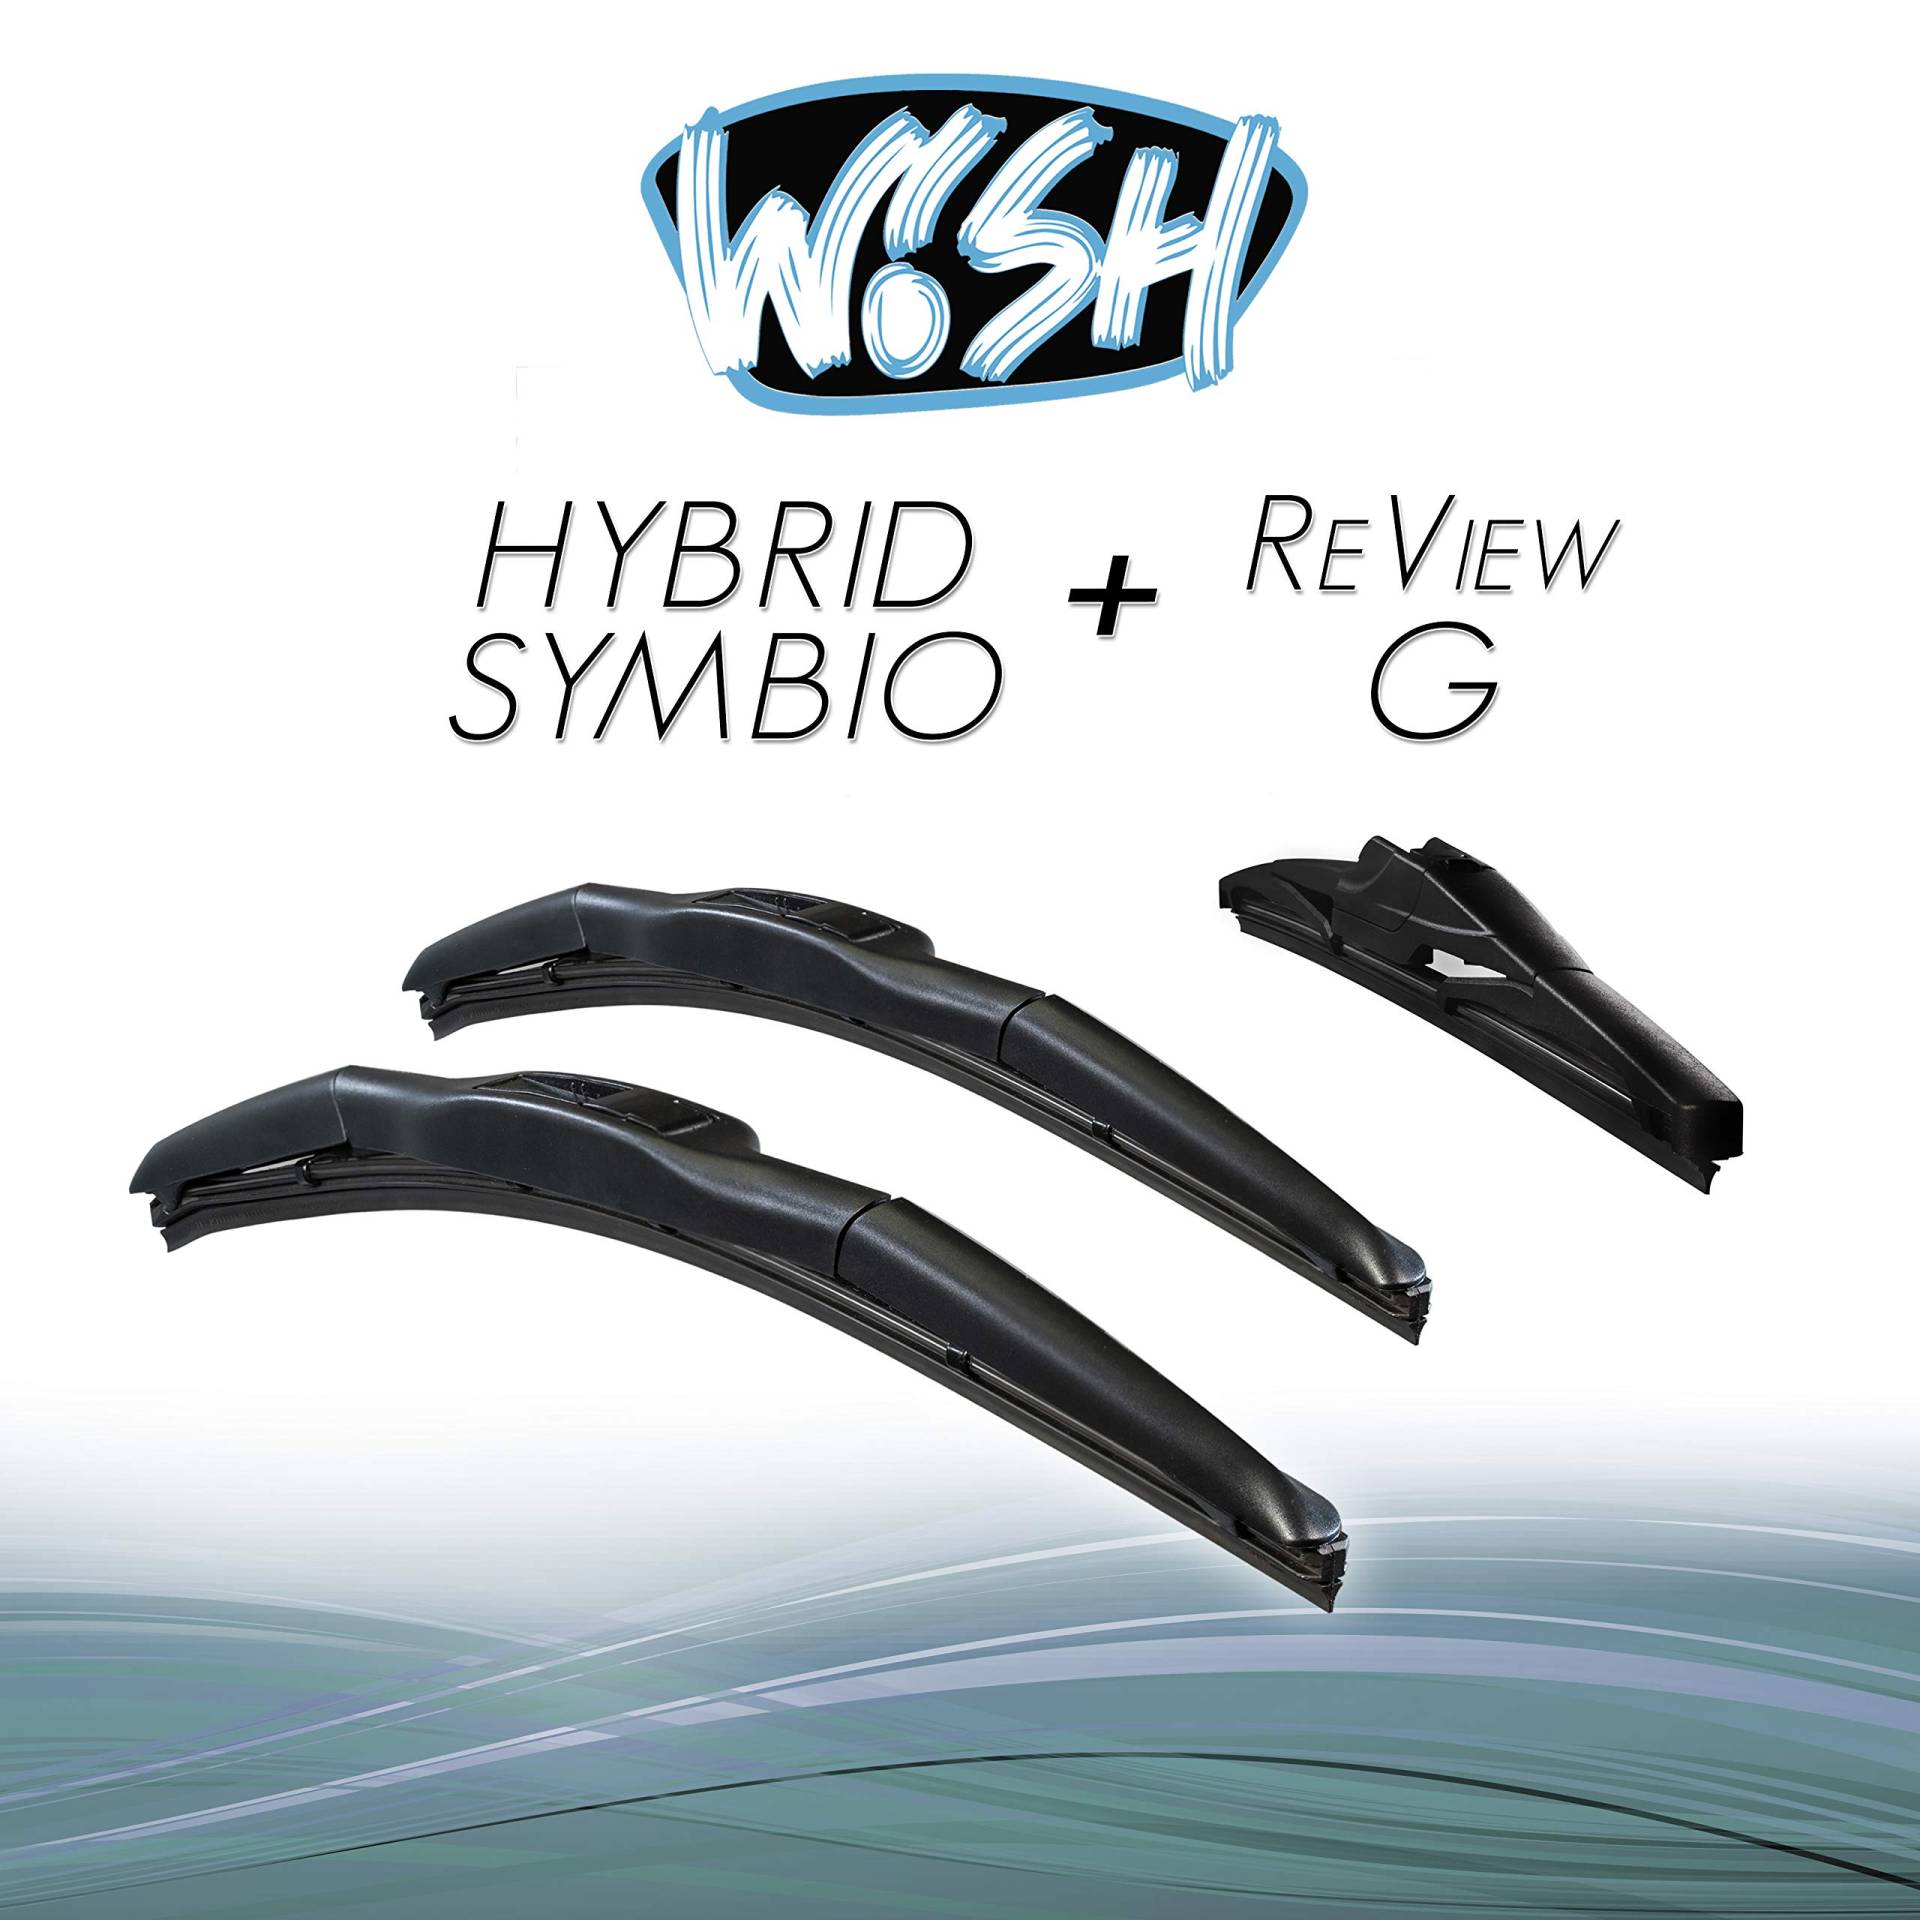 Wish® Hybrid Symbio Satz Front + Heck Scheibenwischer Länge: 26" 650mm / 18" 450mm / 12" 300mm Wischblätter Vorne und Hinten Hybrid-Scheibenwischer + Review G HS26.18.12RG von Wish